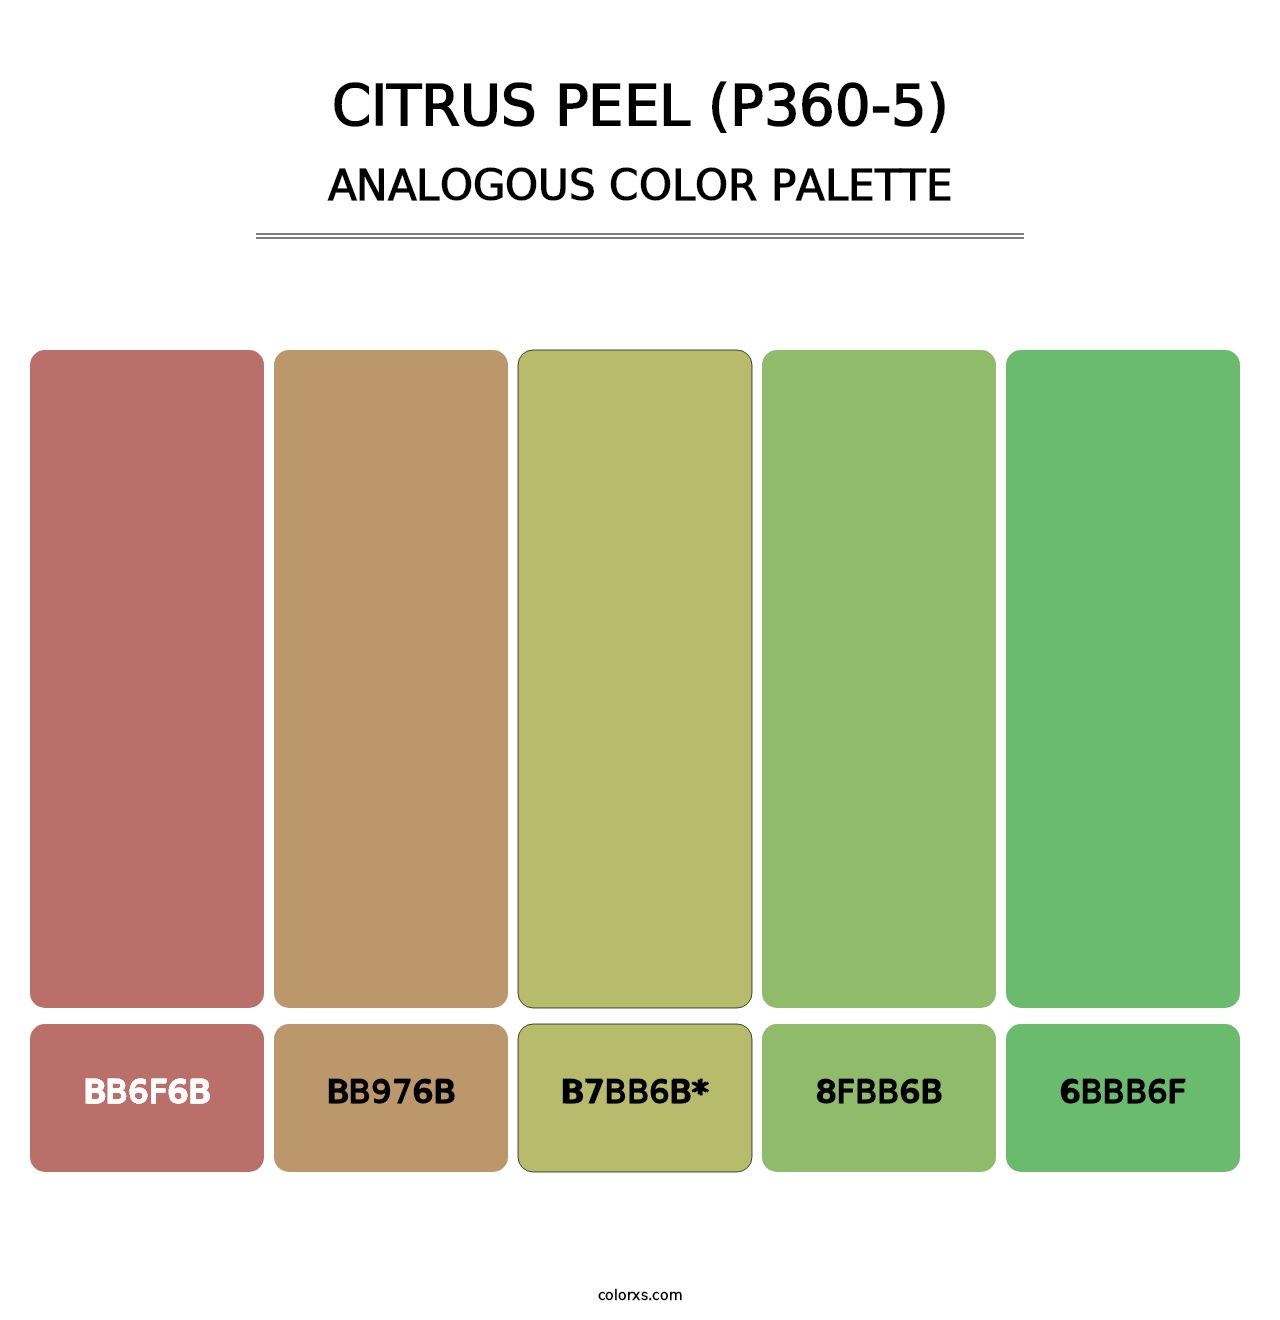 Citrus Peel (P360-5) - Analogous Color Palette